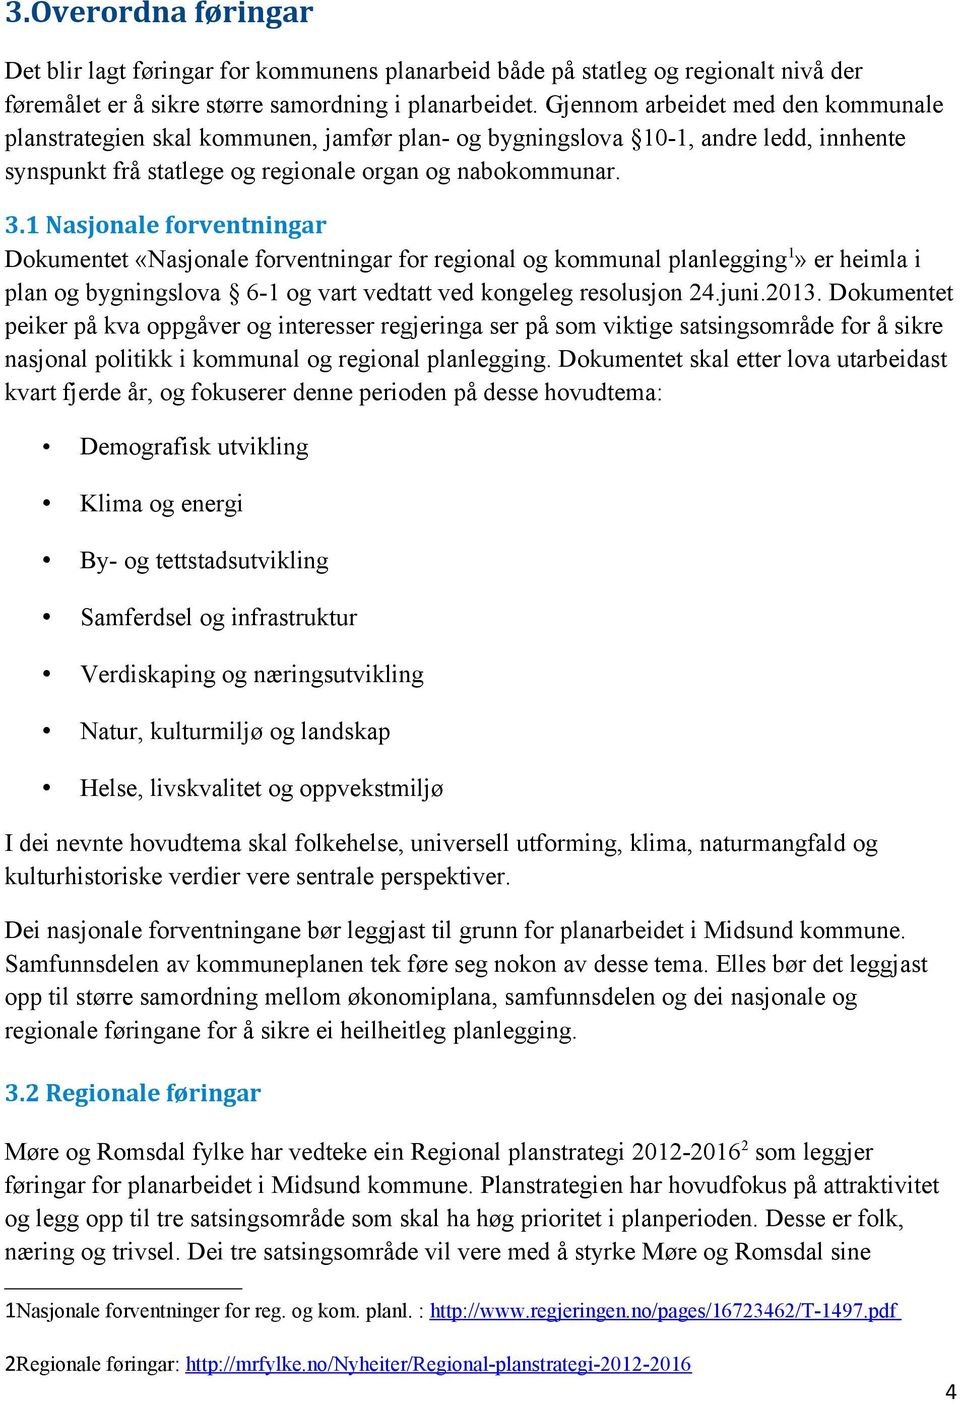 1 Nasjonale forventningar Dokumentet «Nasjonale forventningar for regional og kommunal planlegging1» er heimla i plan og bygningslova 61 og vart vedtatt ved kongeleg resolusjon 24.juni.2013.